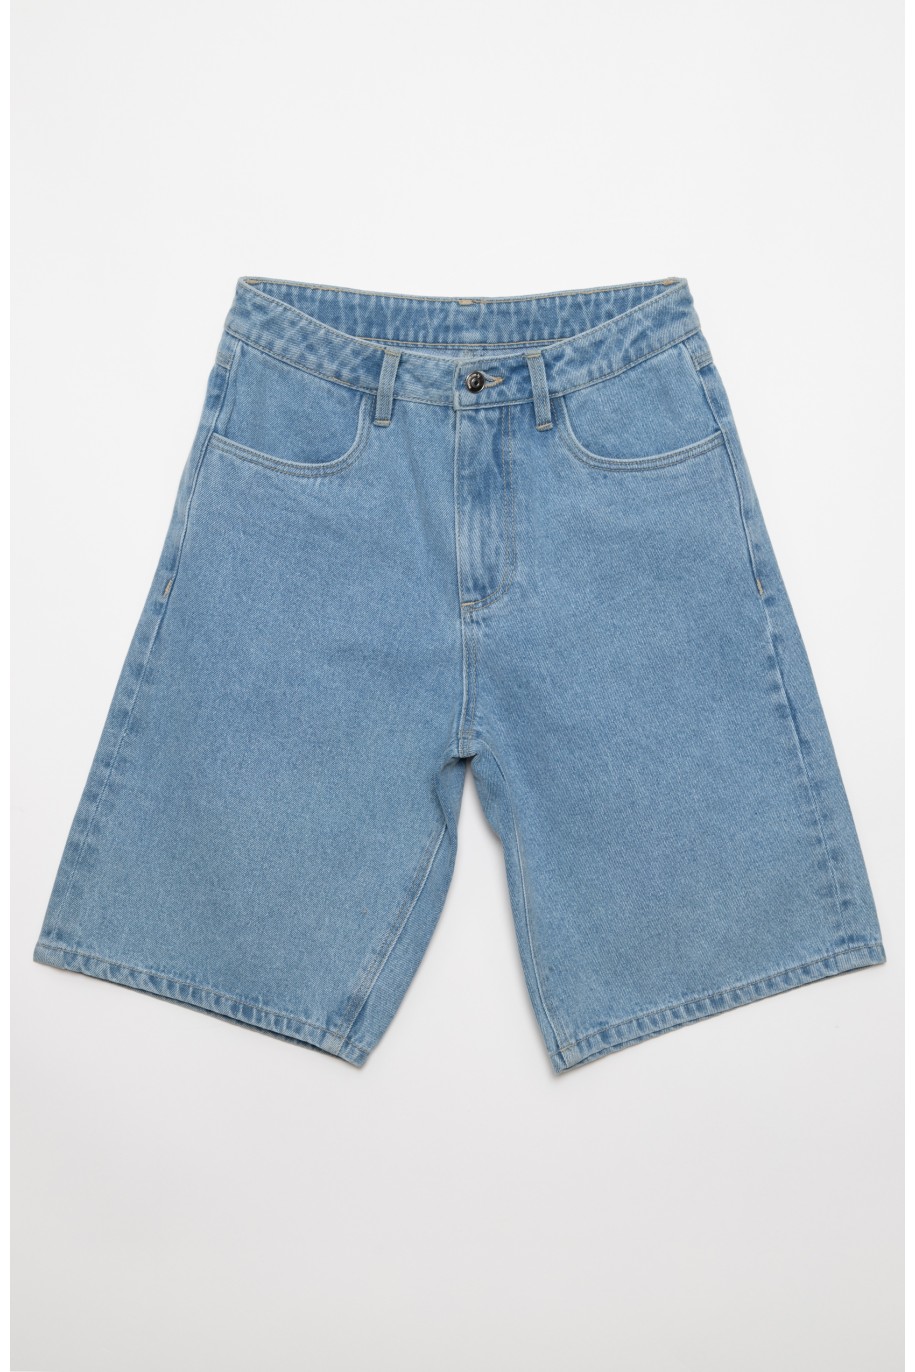 Jeansowe krótkie spodenki dla dziewczyny - 41561